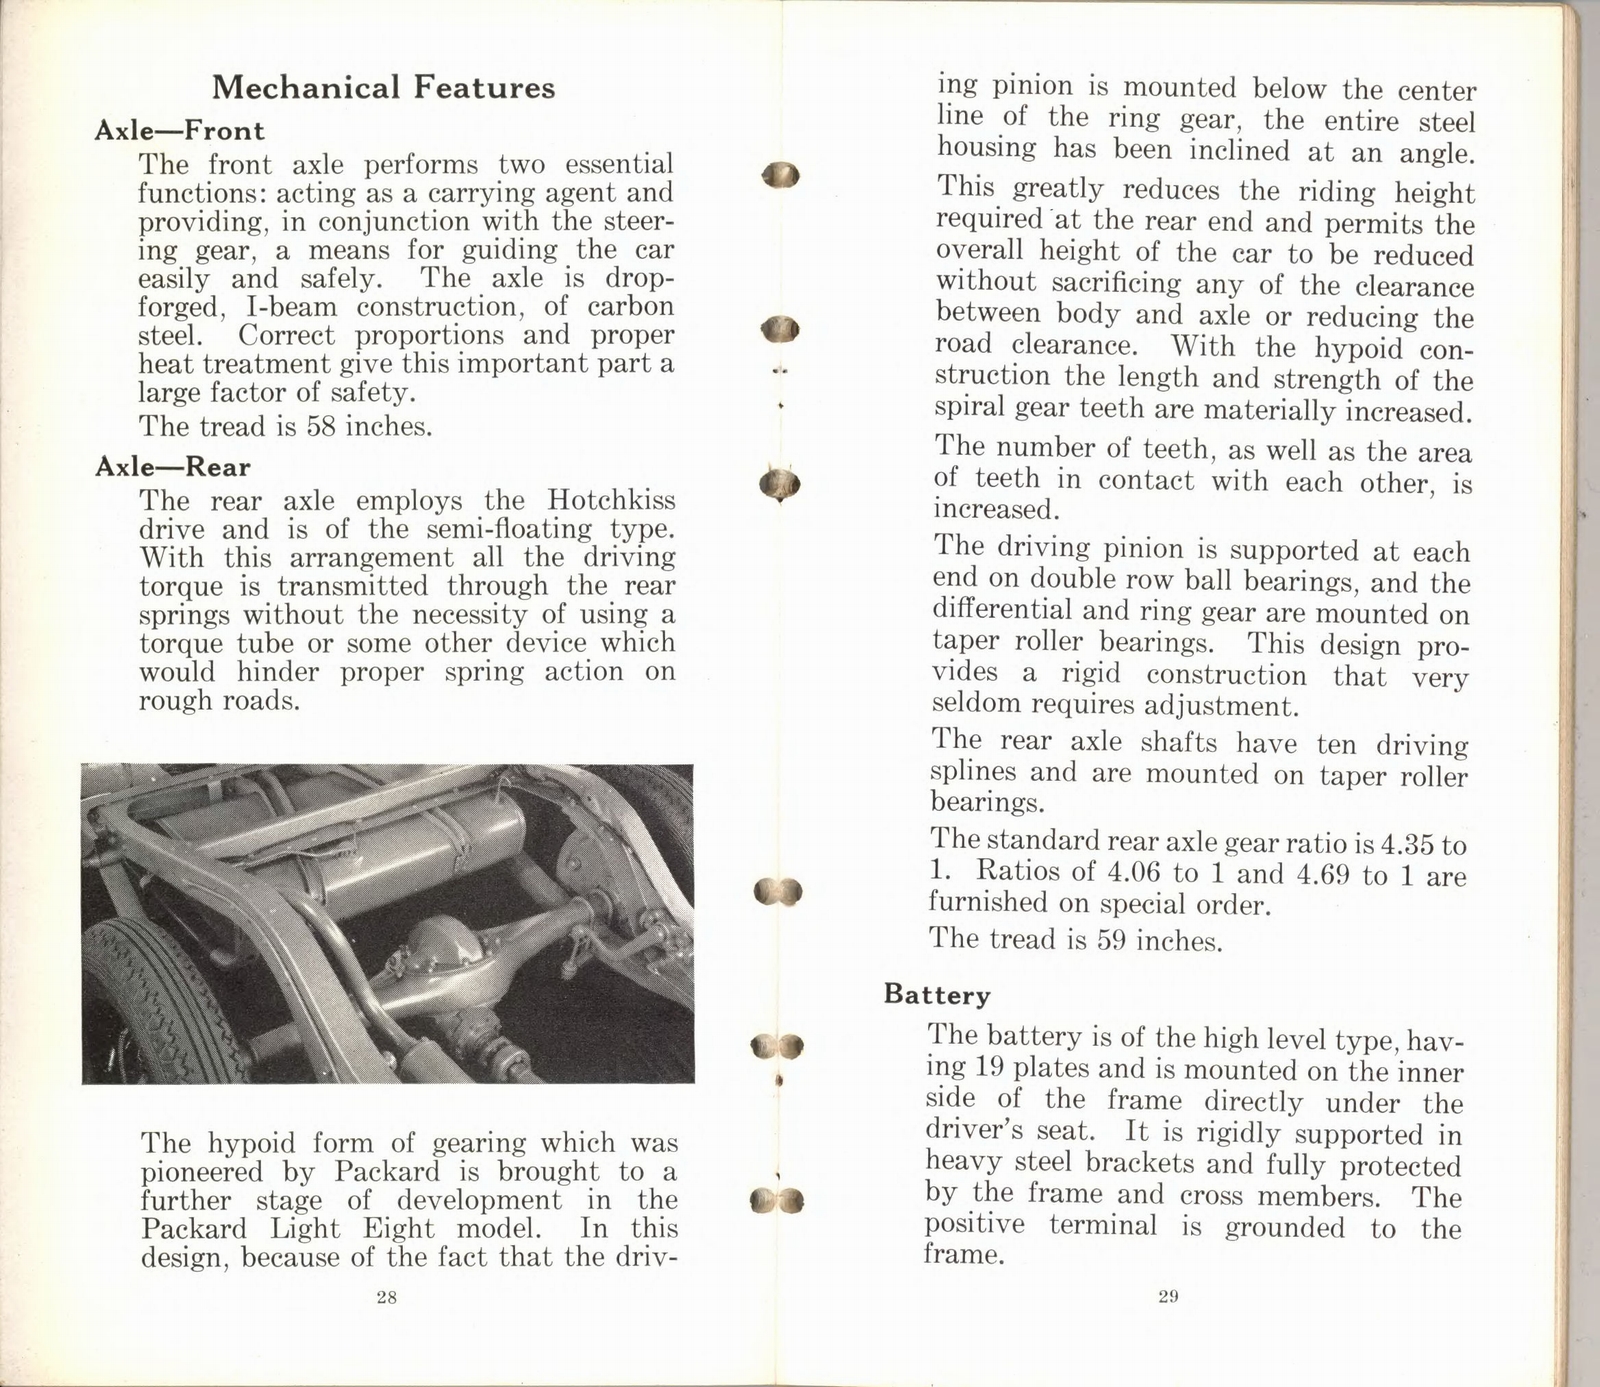 n_1932 Packard Light Eight Facts Book-28-29.jpg